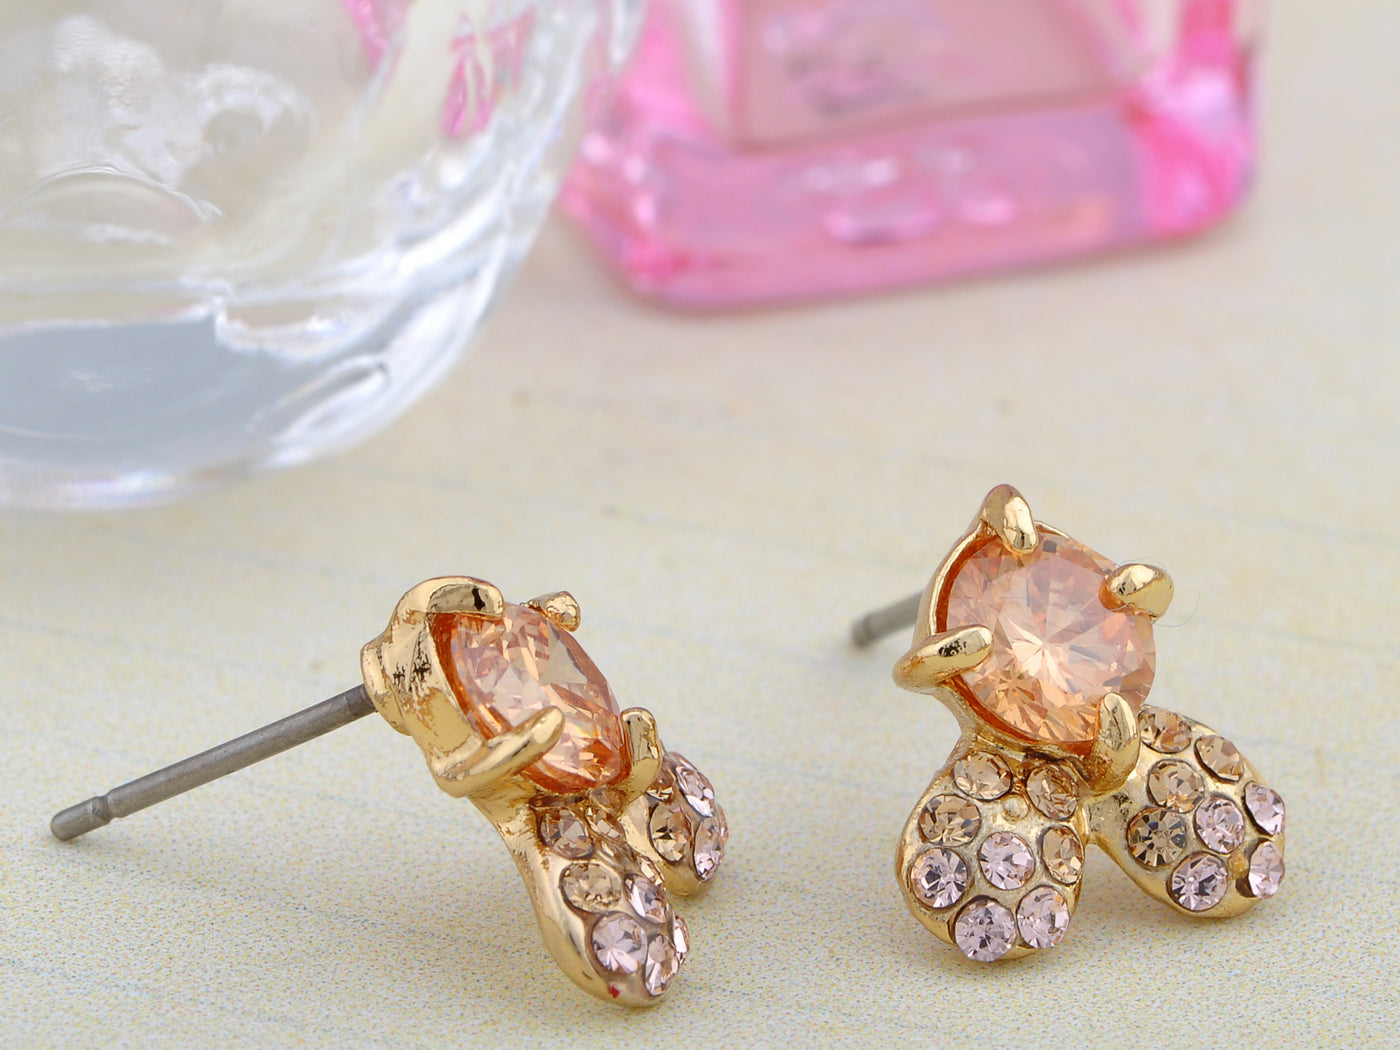 Swarovski Crystal Stem Less Clovers Element Earring Necklace Set